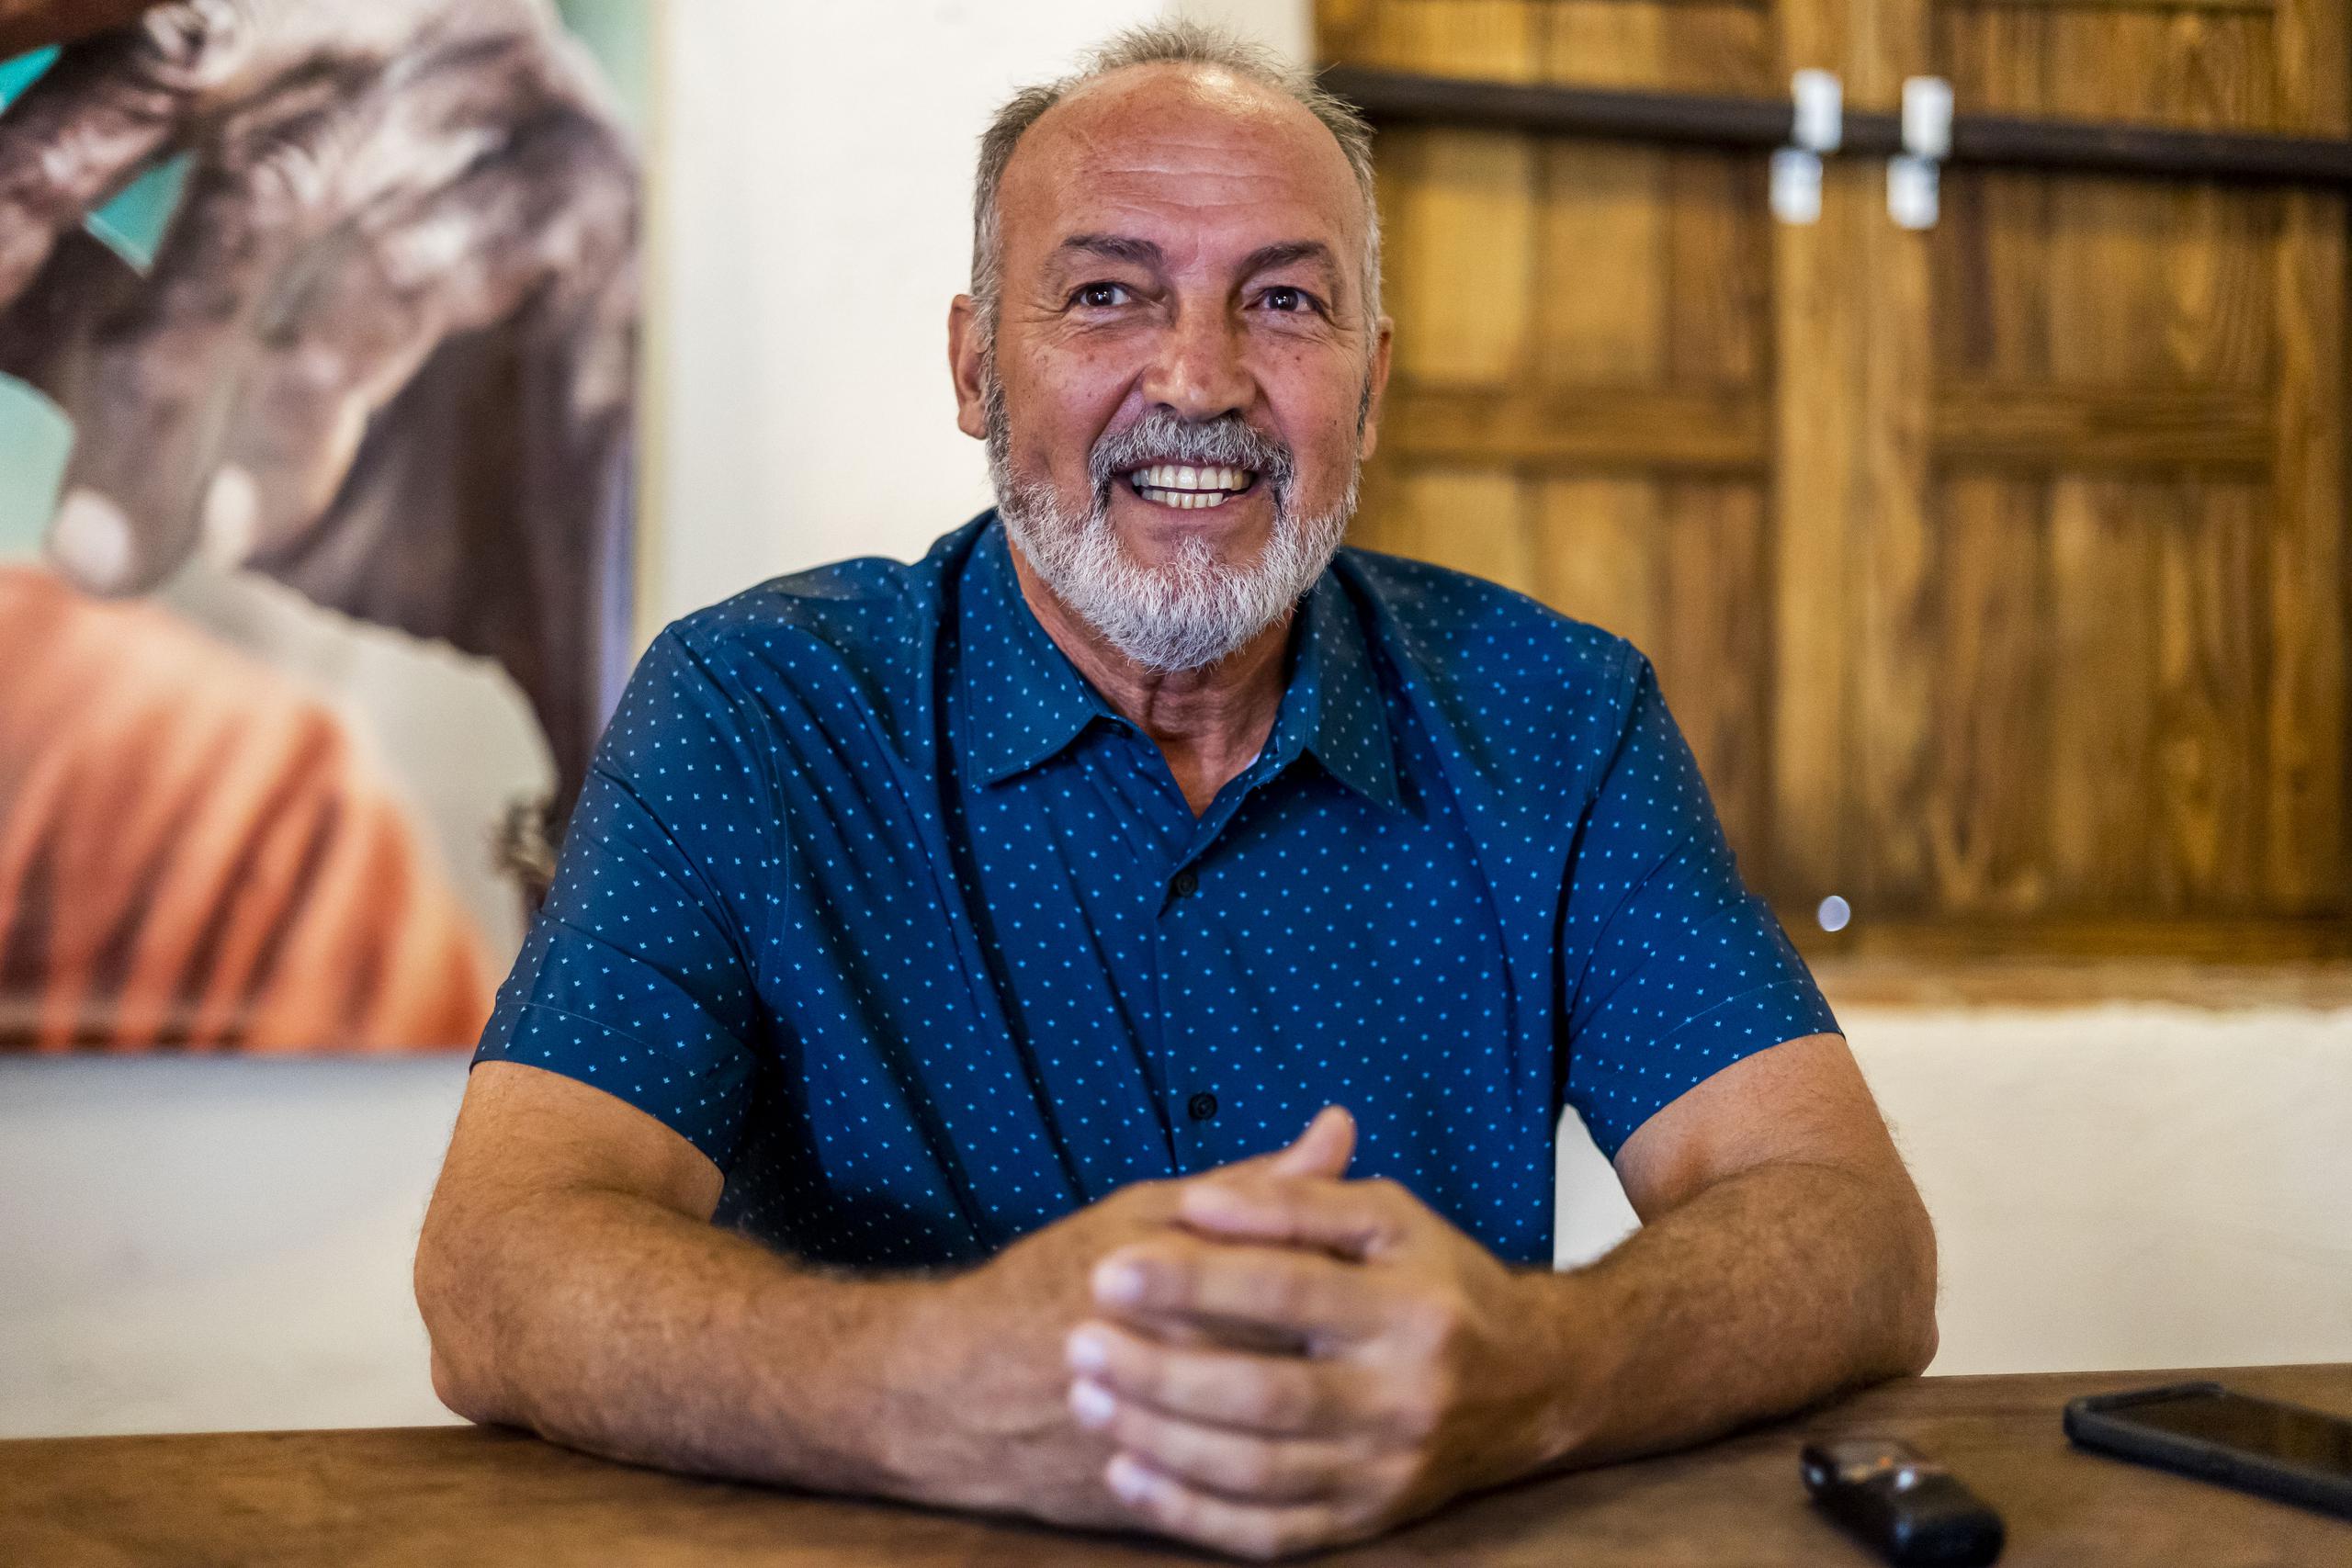 A sus 67 años, Juan José no pierde la capacidad de sonreír, pues asegura que ser feliz es un deber; una característica que lo distinguió desde su niñez y que mantuvo, incluso, en situaciones de alto estrés.